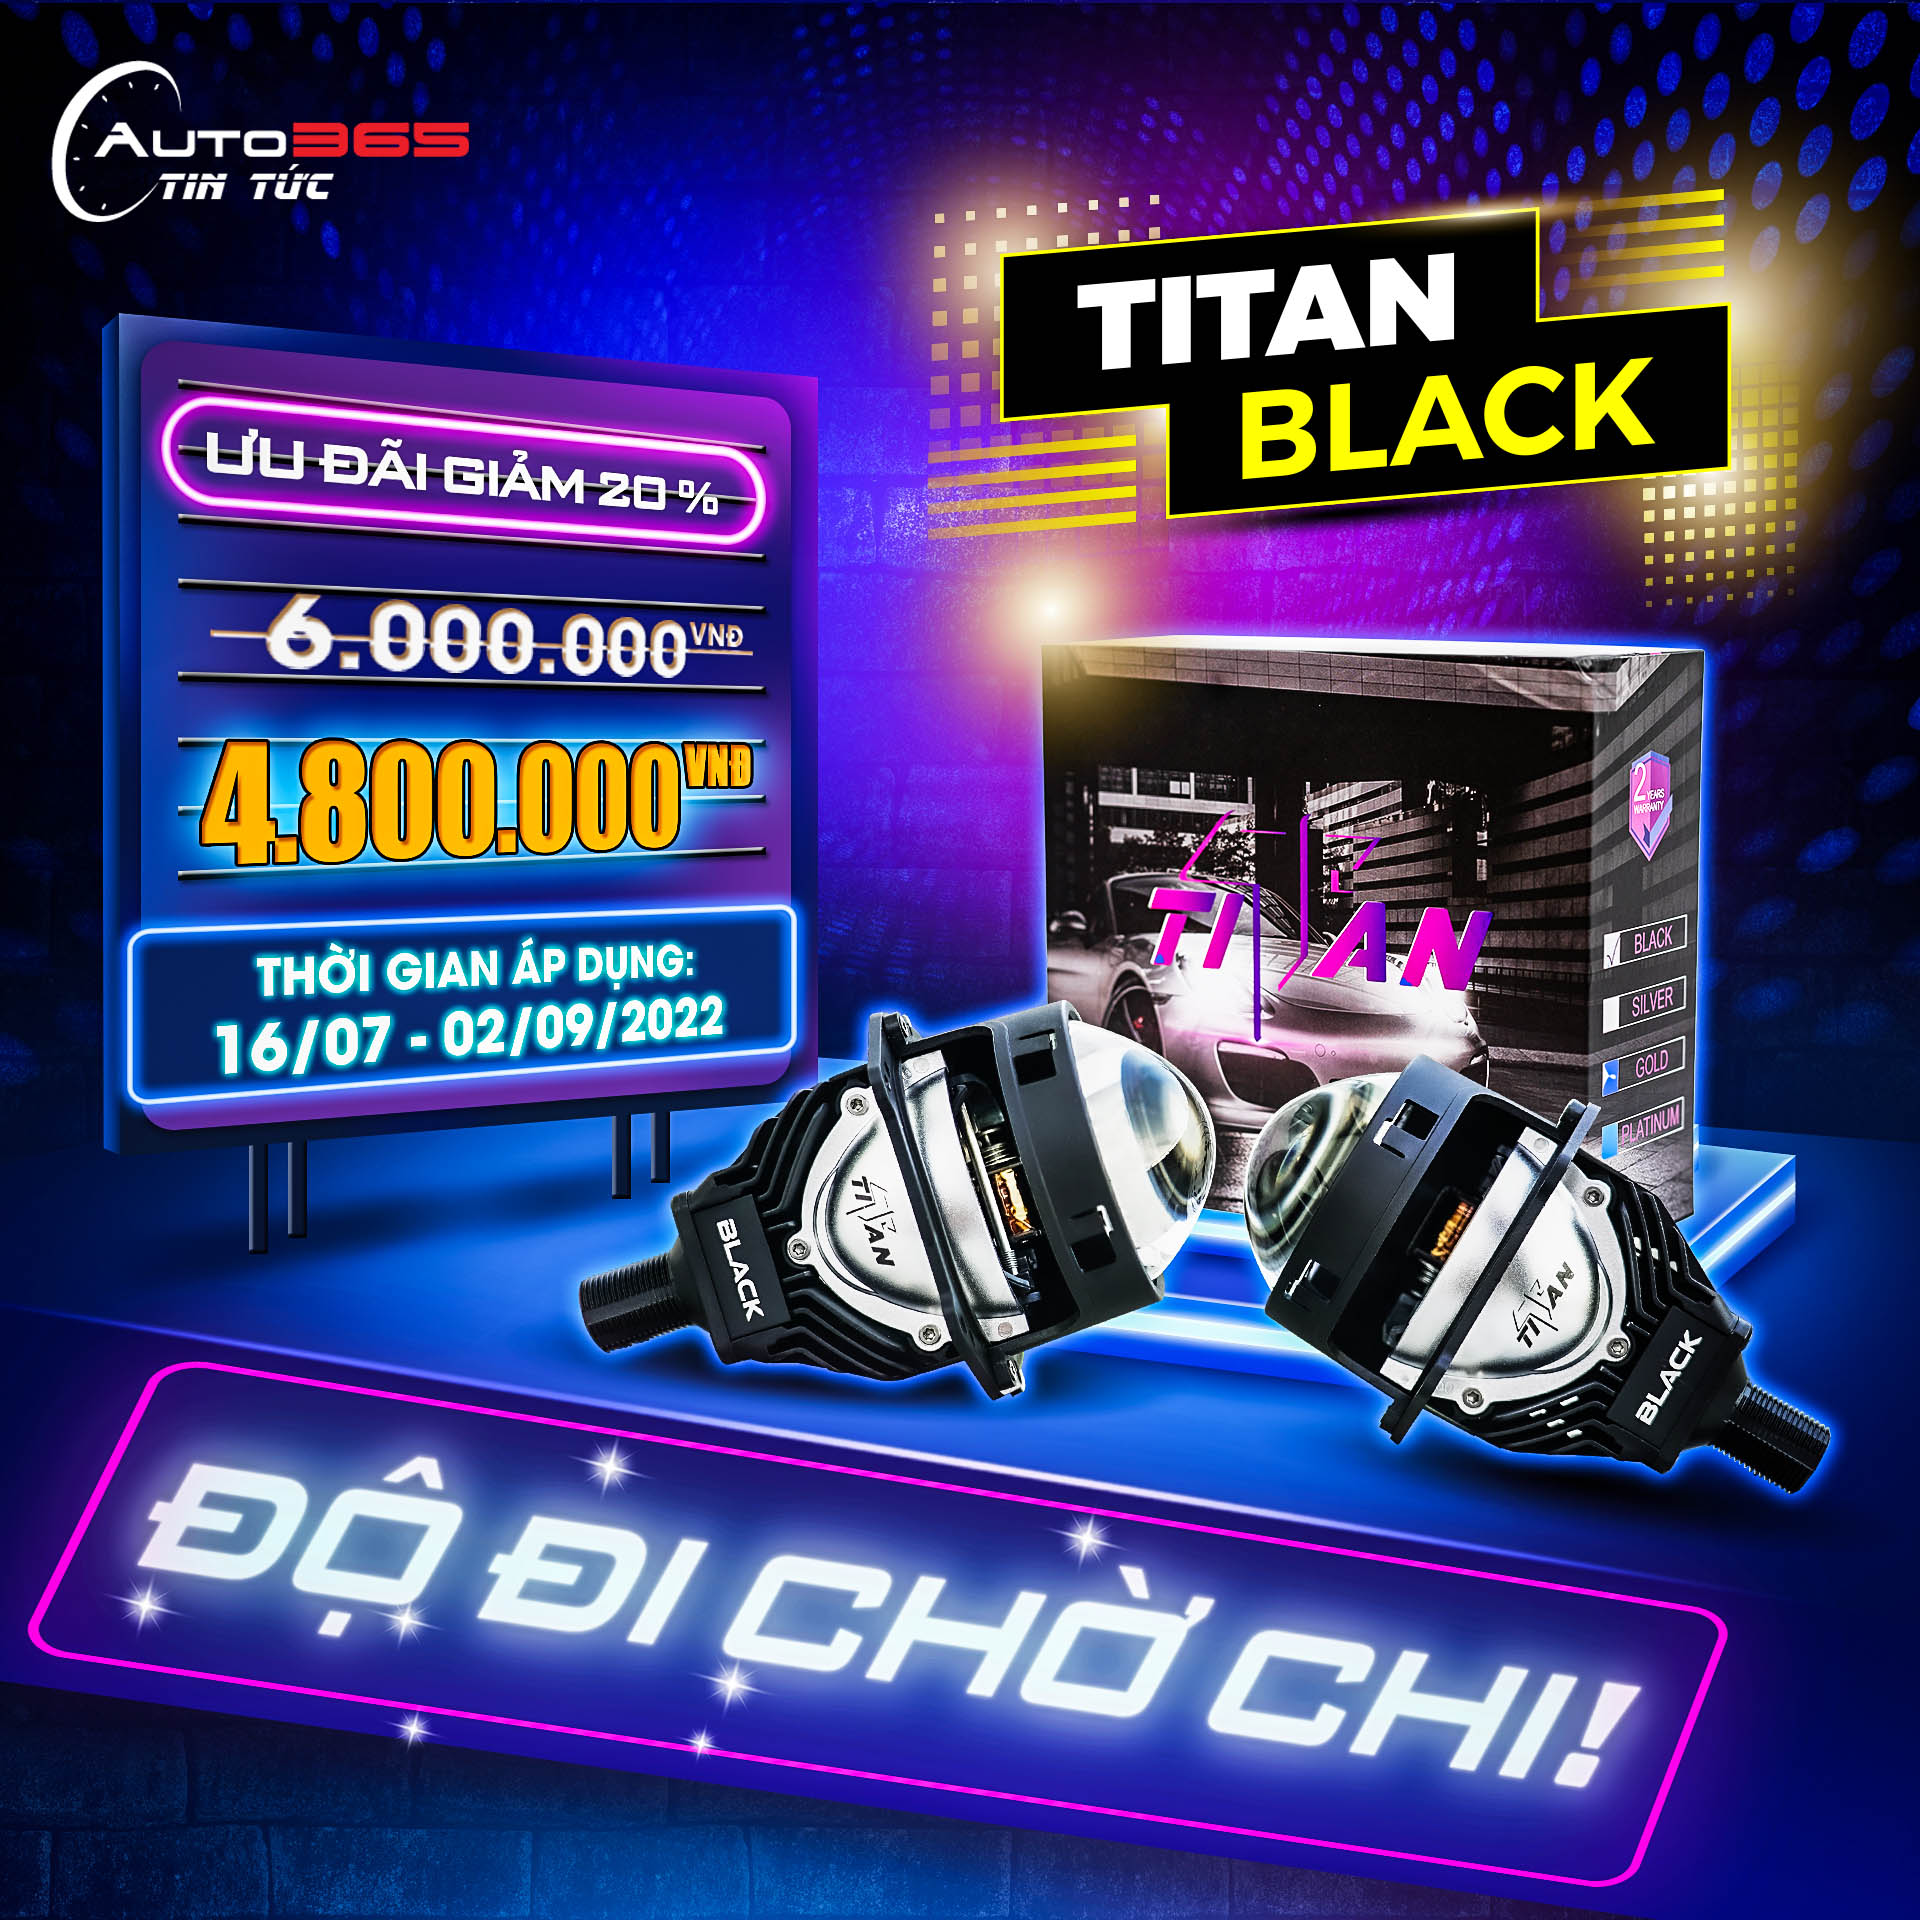 Bi LED Titan Black: Giảm 20%, miễn phí lắp đặt